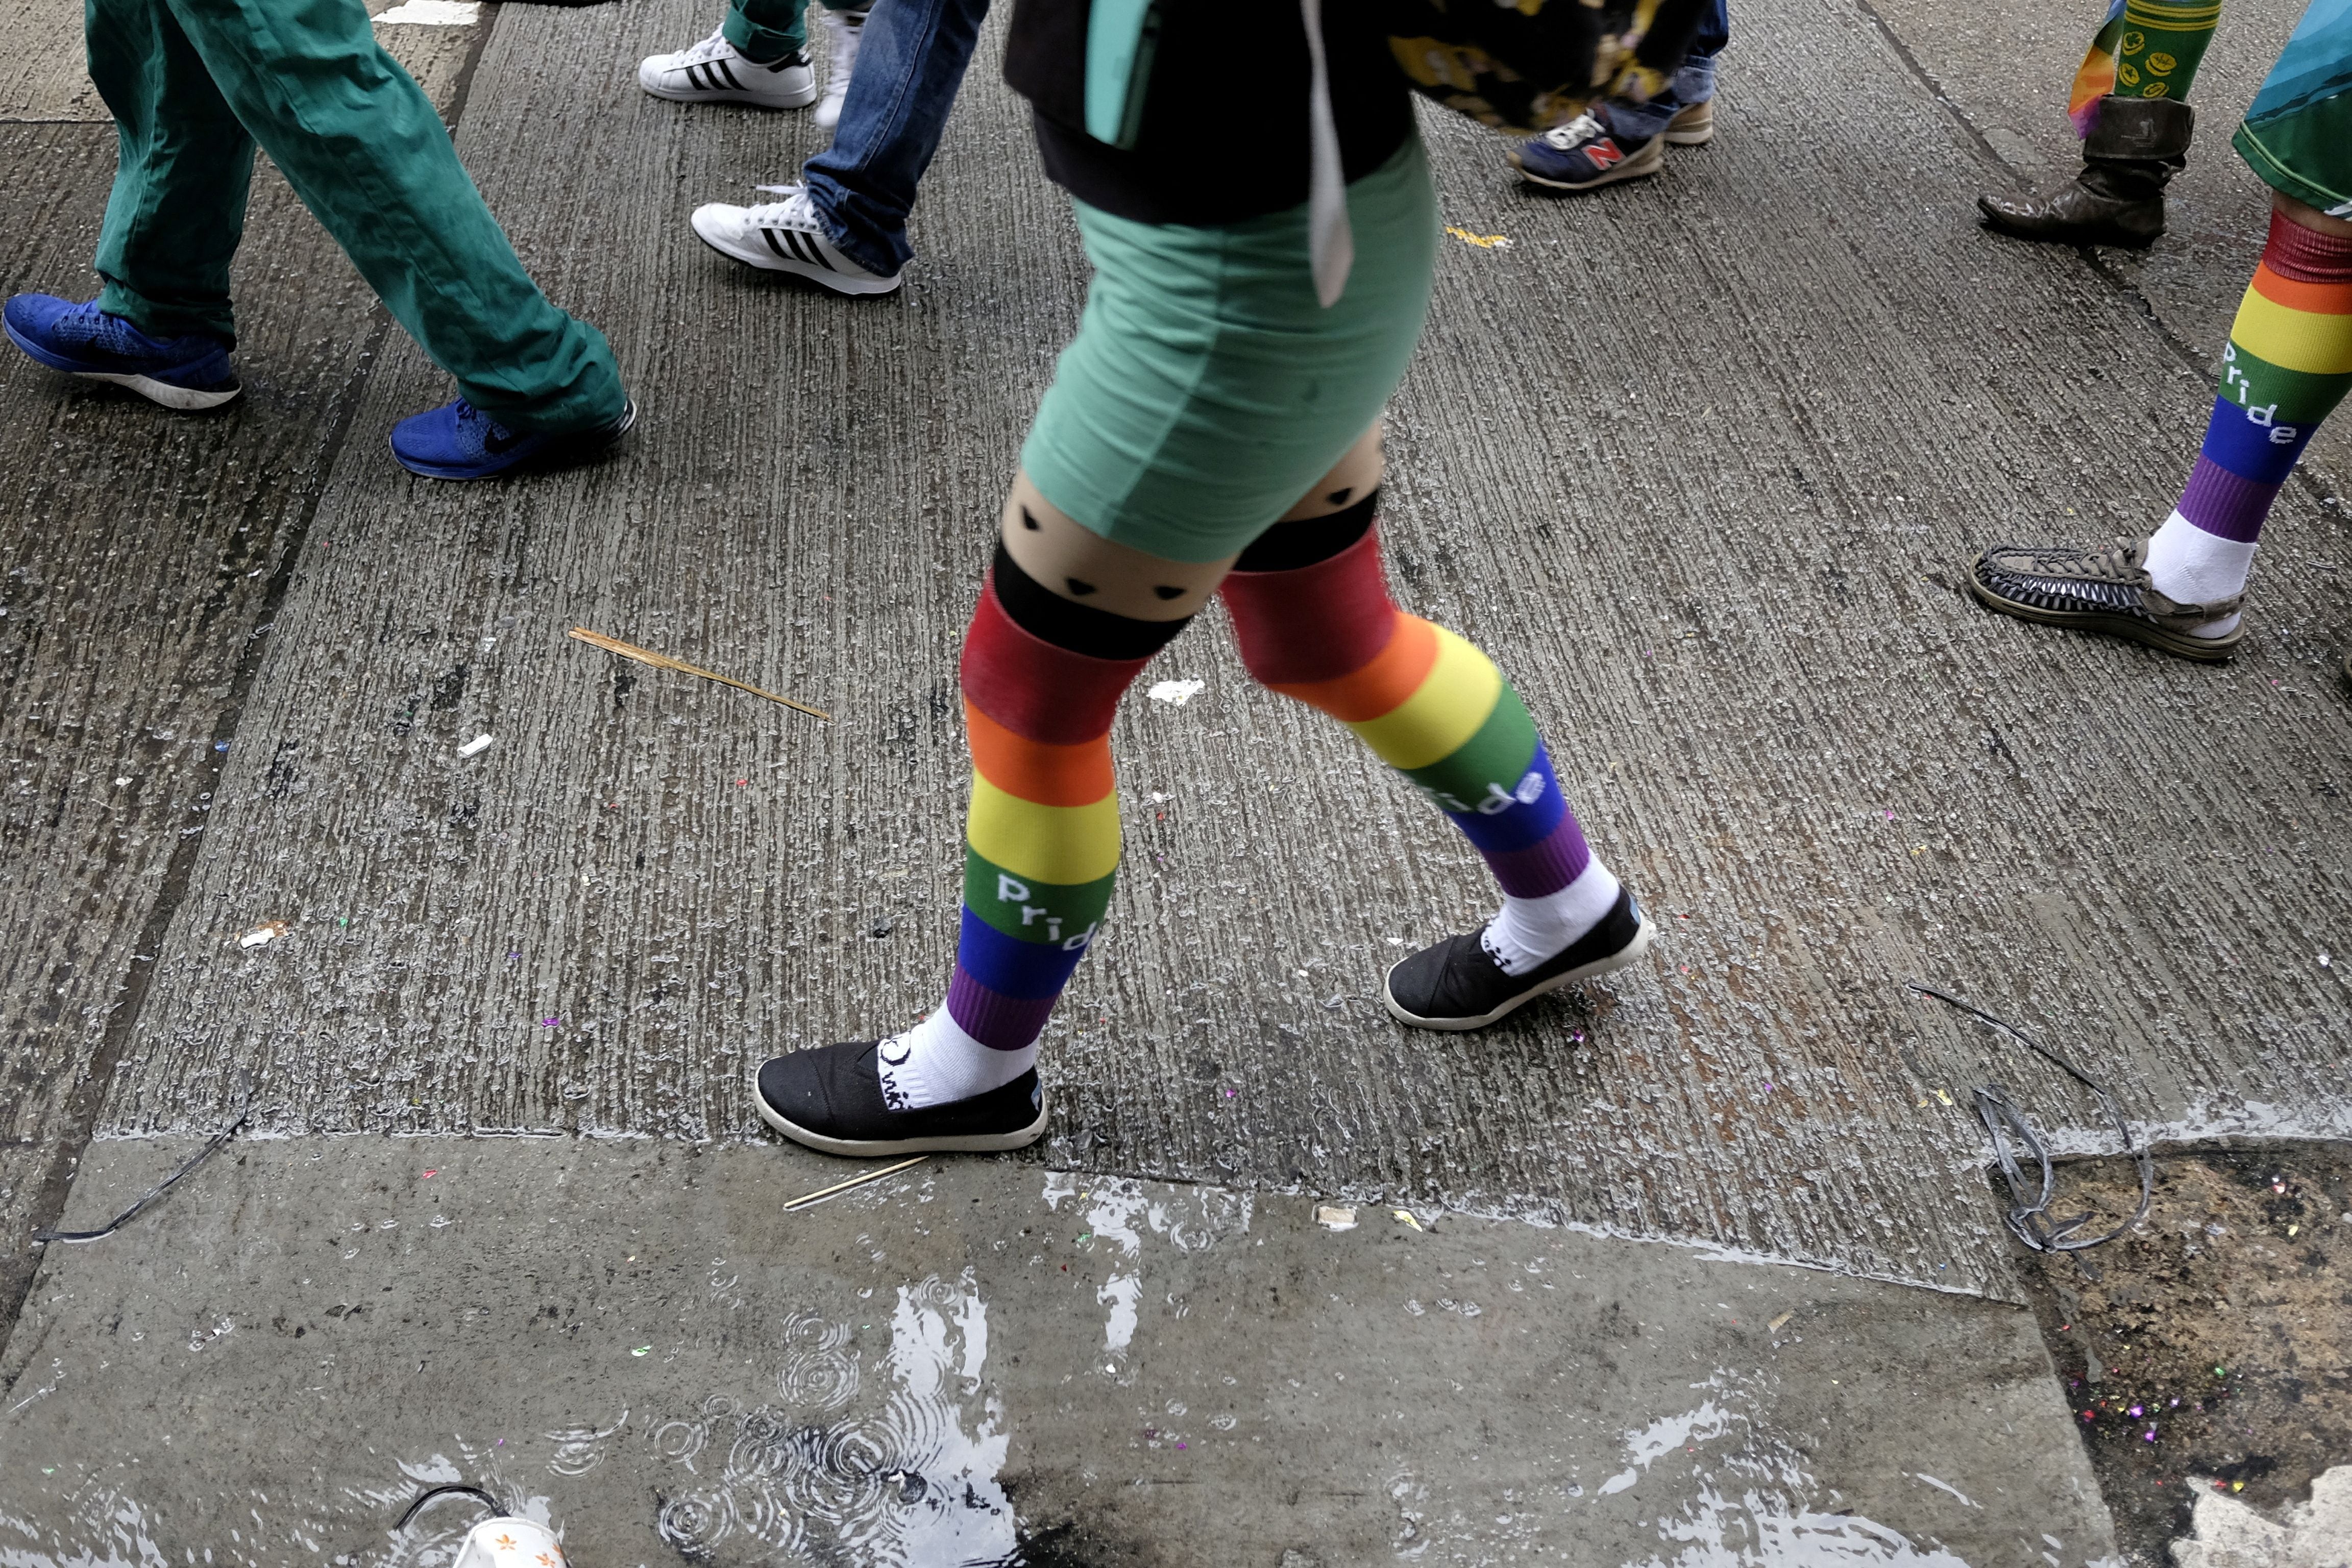 FOTO DE ARCHIVO: La gente participa en el desfile anual del orgullo LGBT en Hong Kong, China, el 26 de noviembre de 2016 (REUTERS/Bobby Yip)